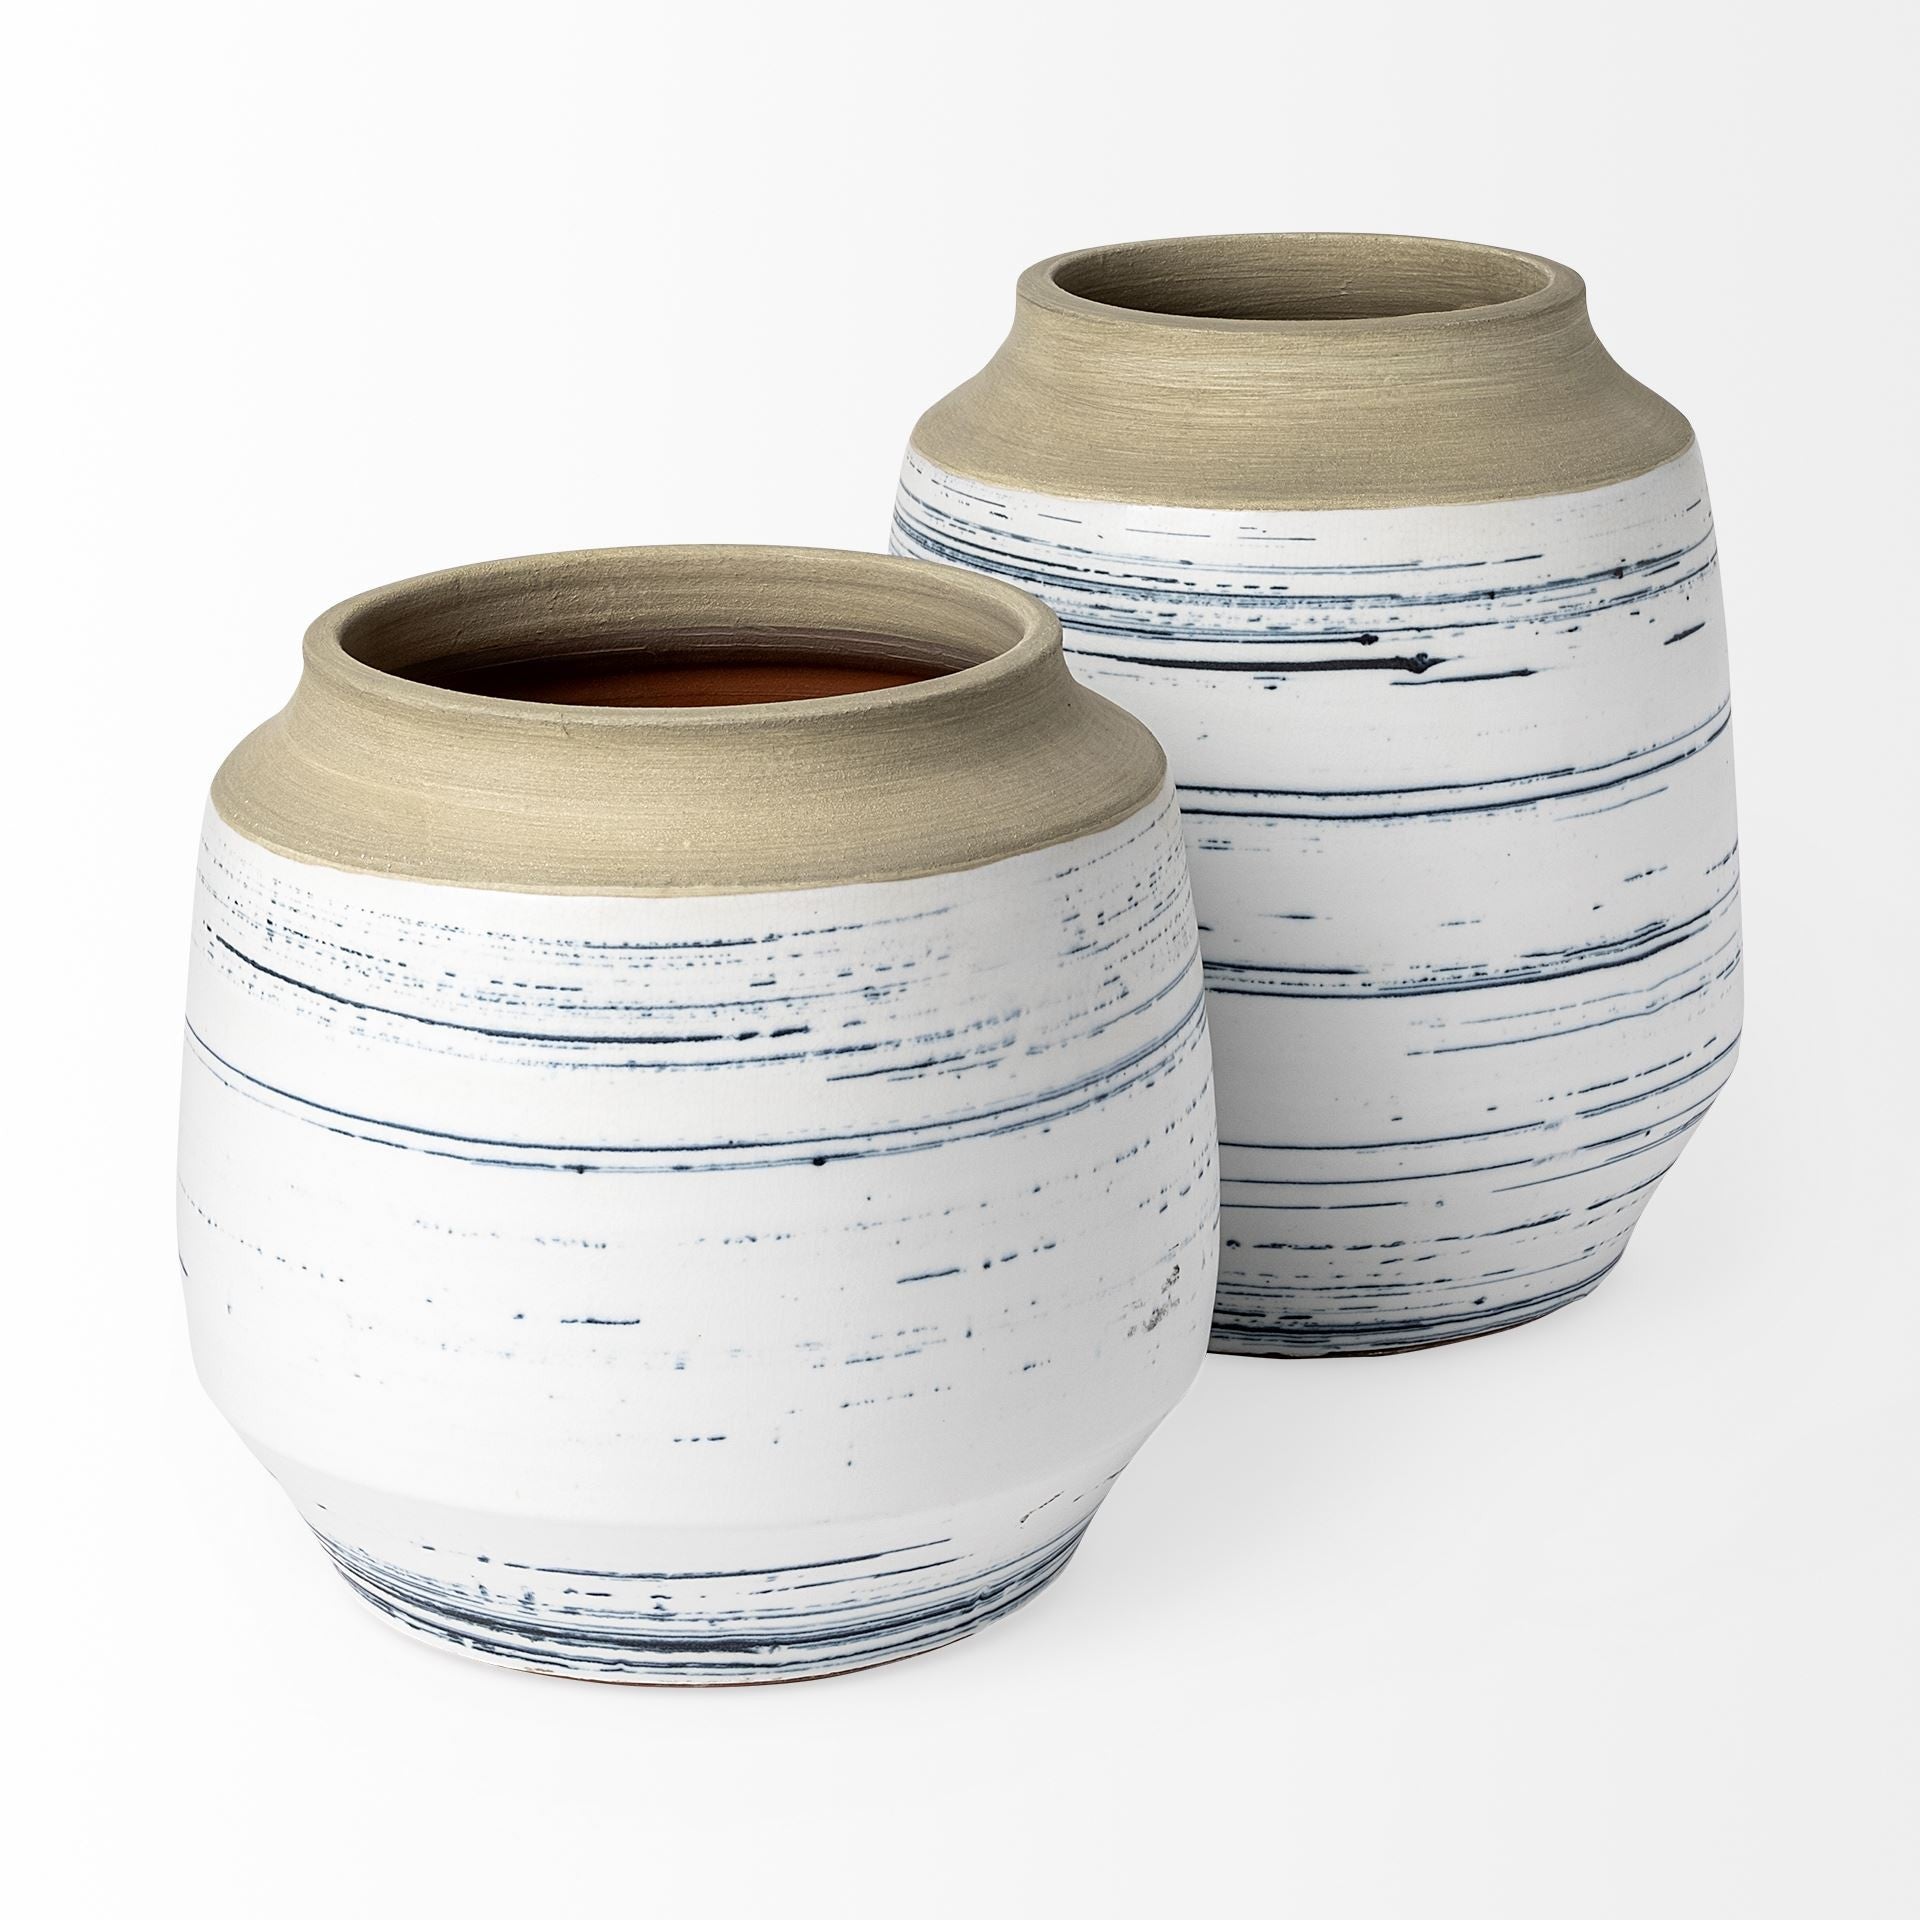 9" Blue White and Sand Coastal Ceramic Vase